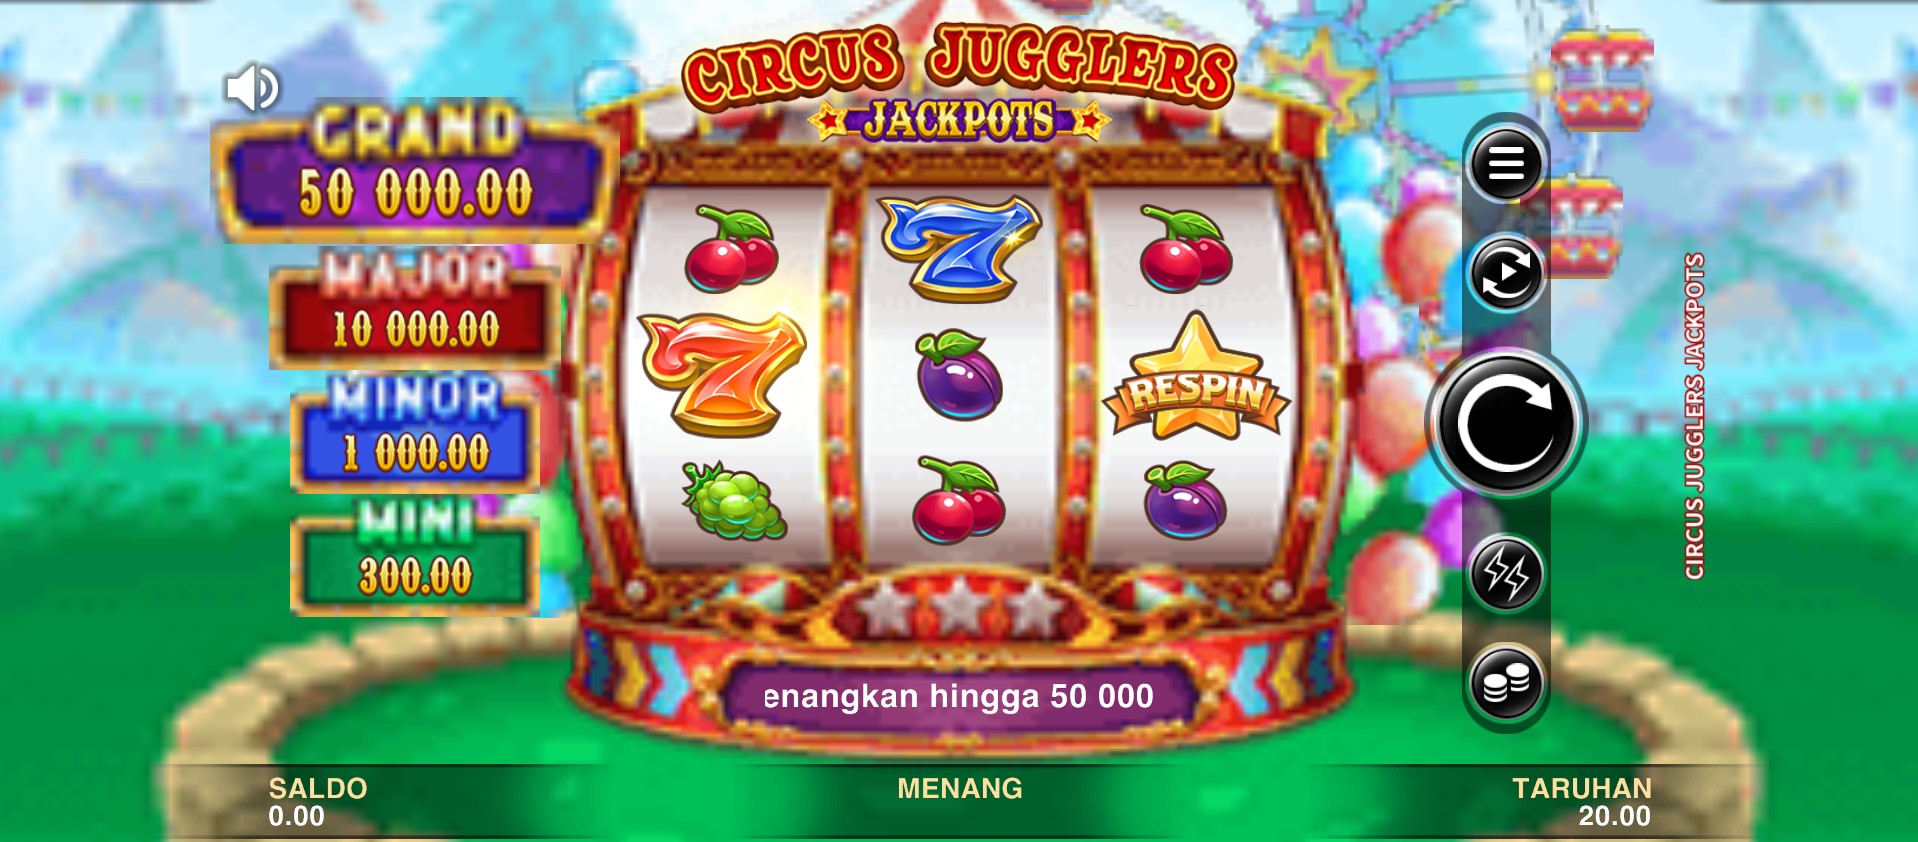 Memasuki Dunia Pesona dan Keterampilan di Microgaming Circus Jugglers Jackpots